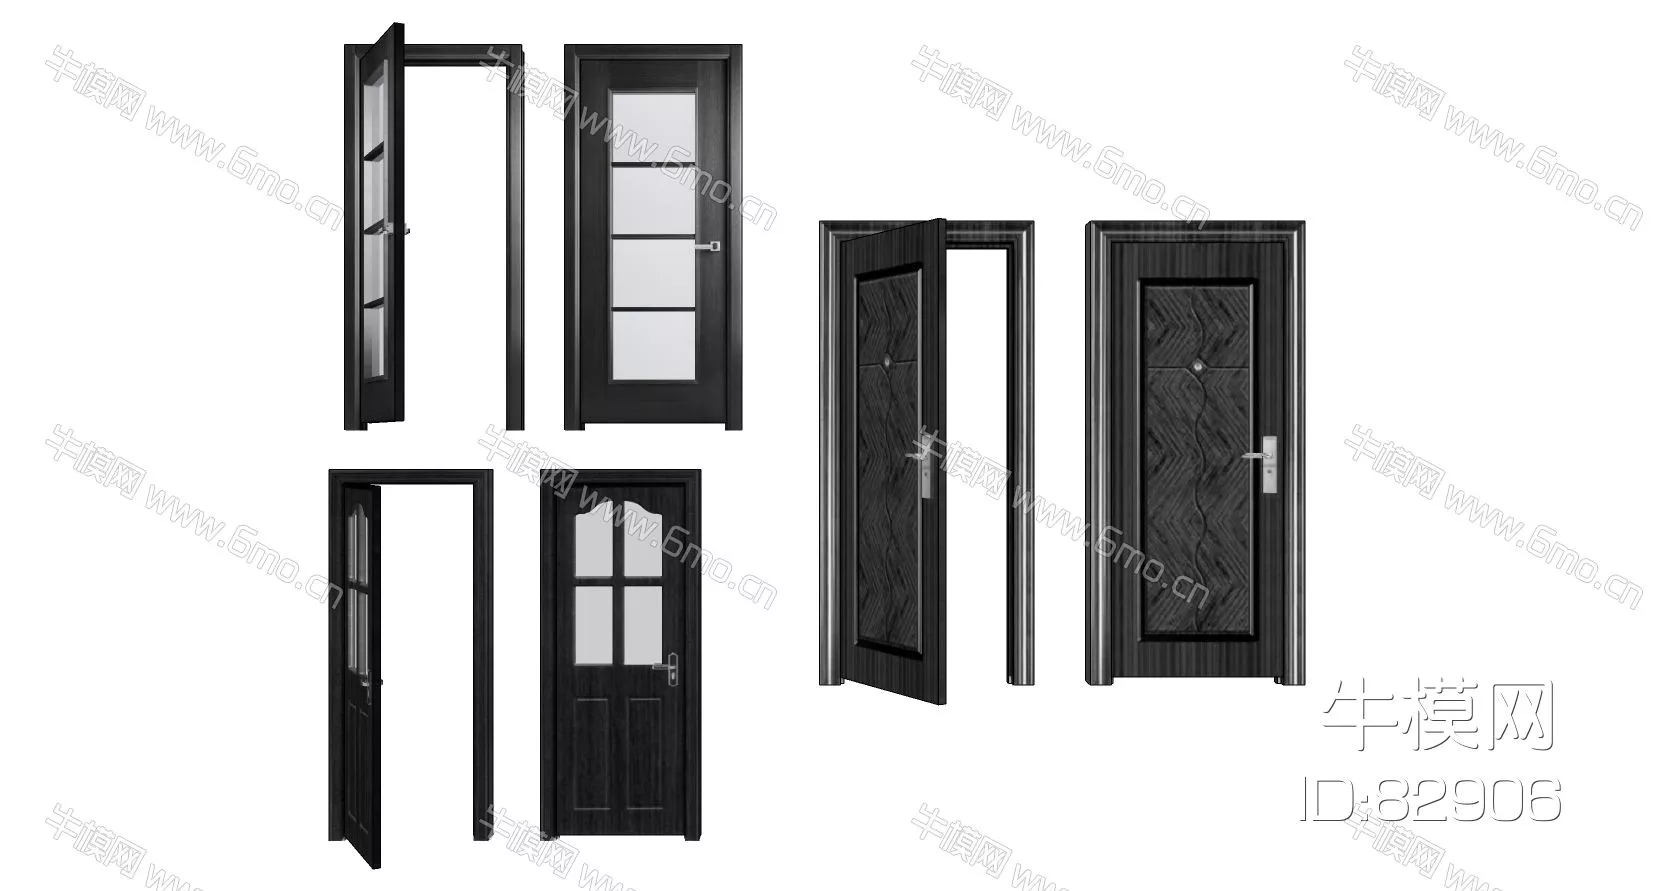 EUROPE DOOR AND WINDOWS - SKETCHUP 3D MODEL - ENSCAPE - 82906